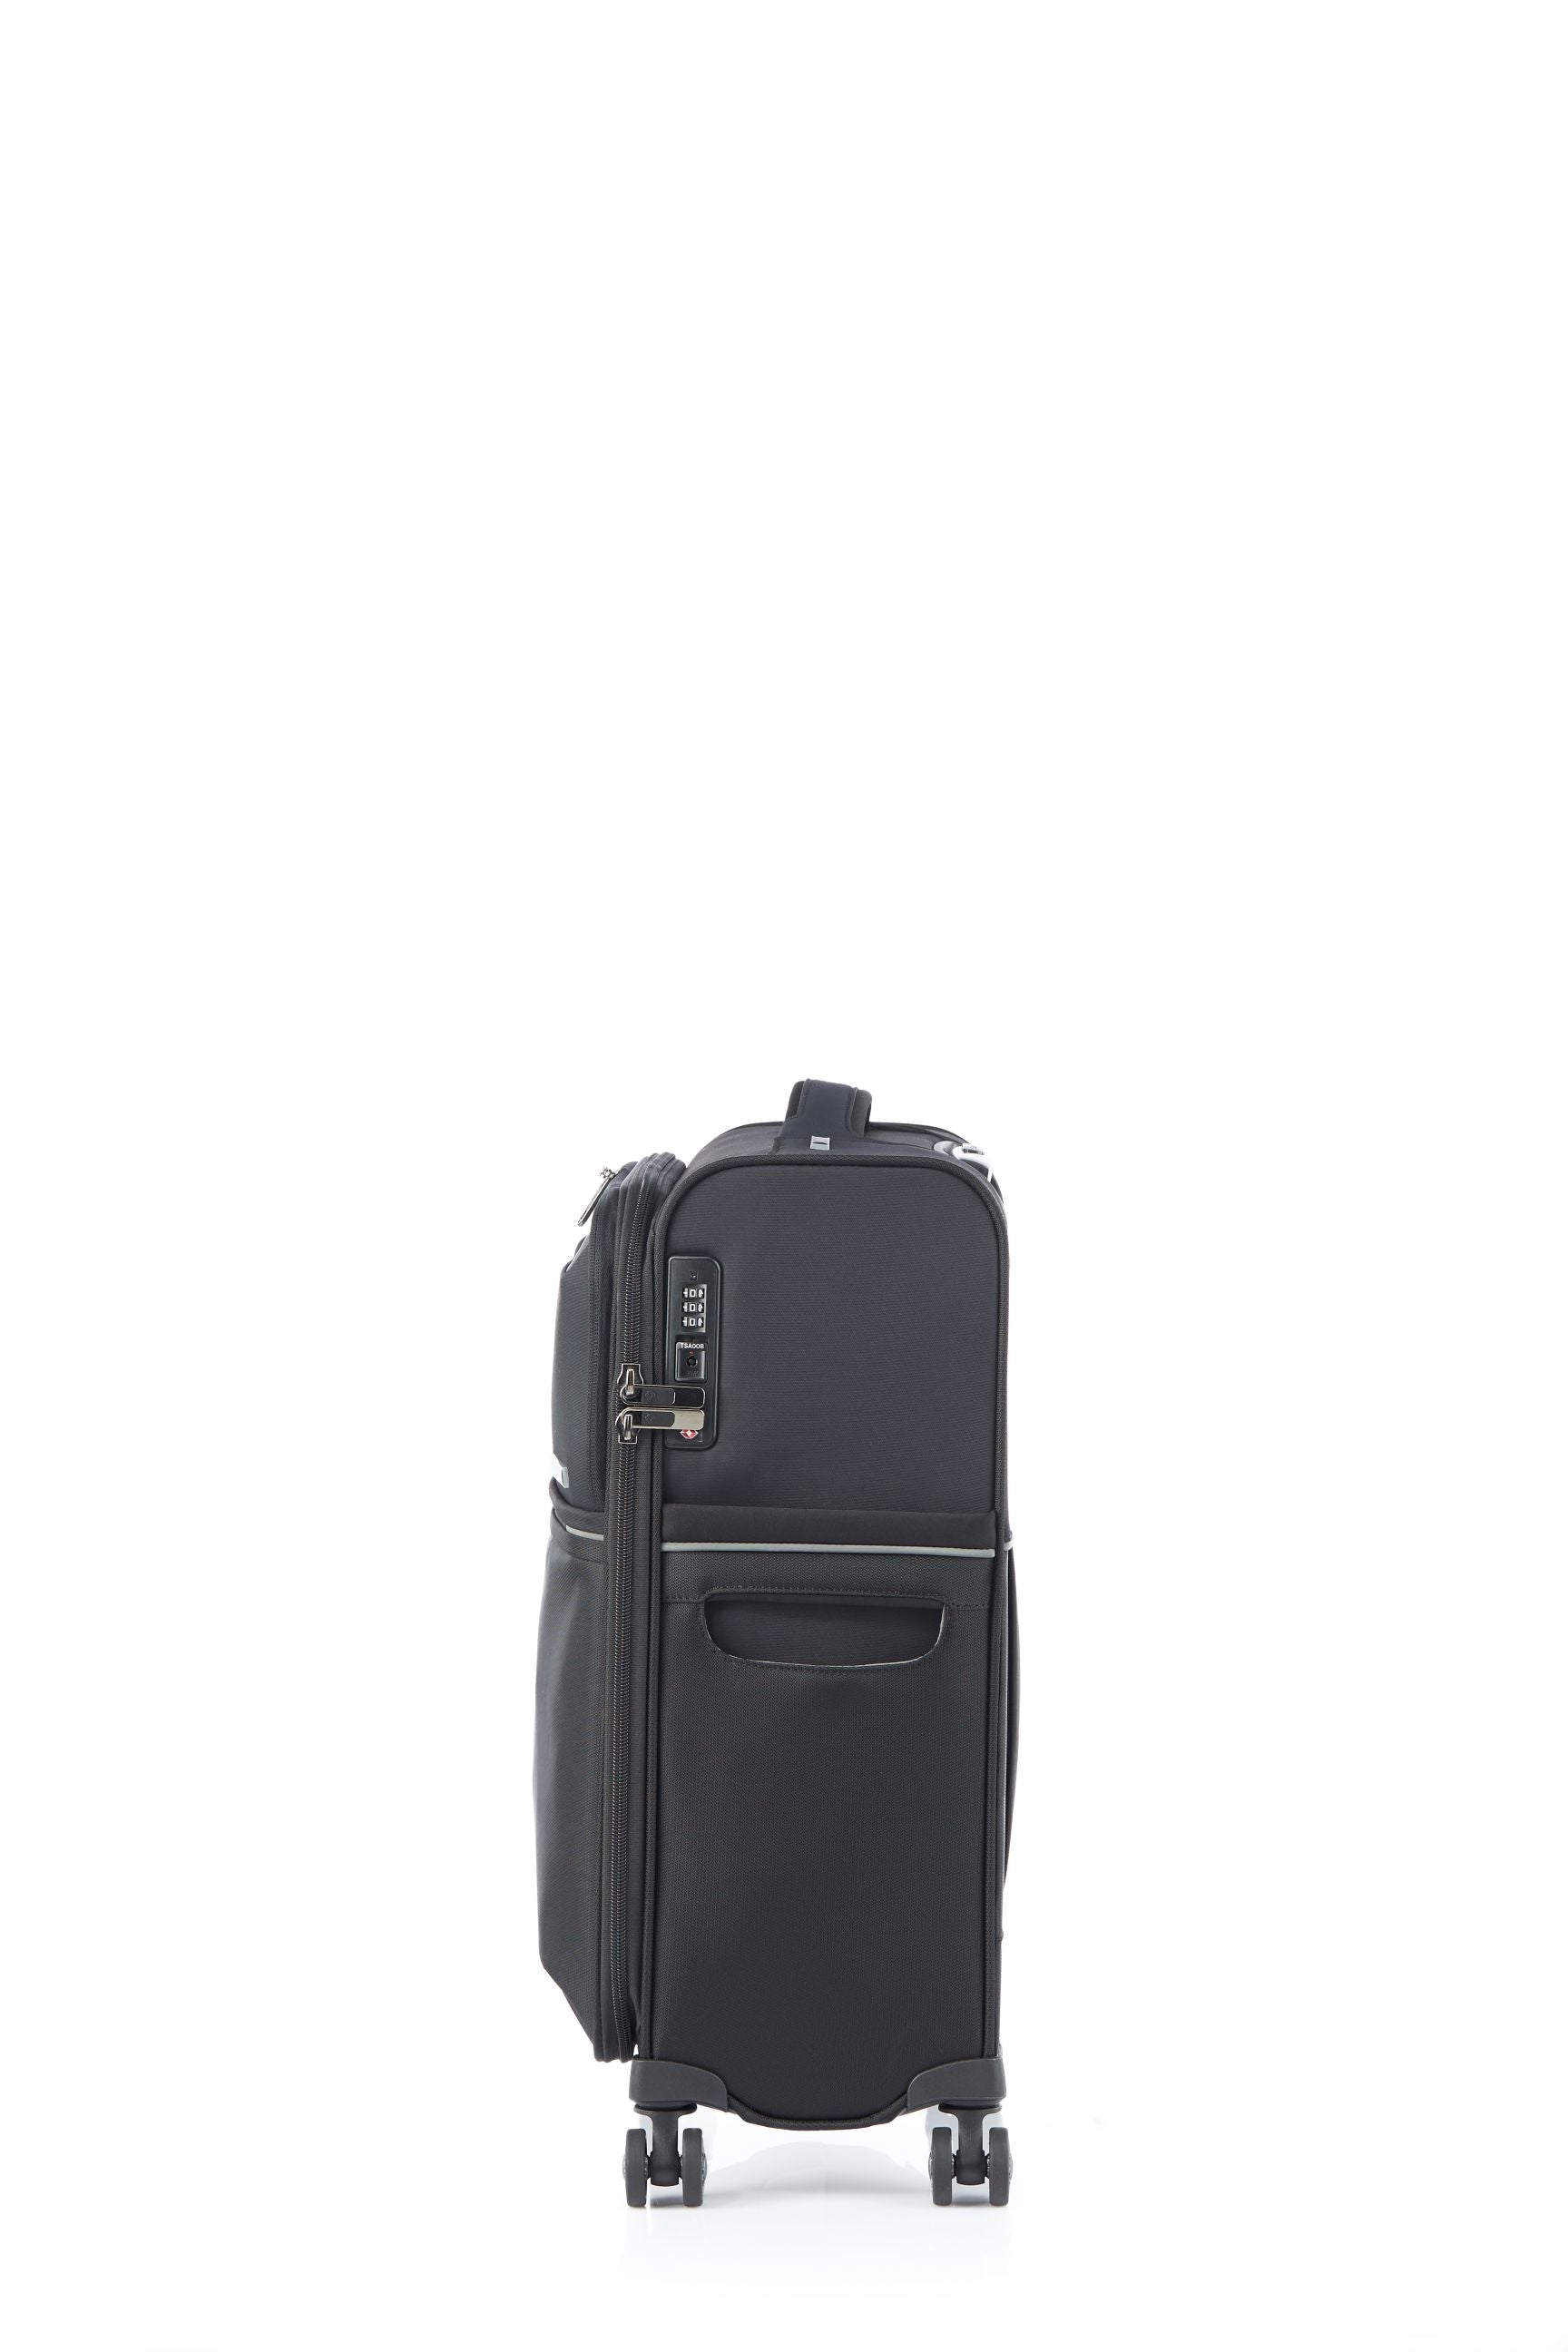 Samsonite - 73HR 55cm Small Suitcase - Black-11